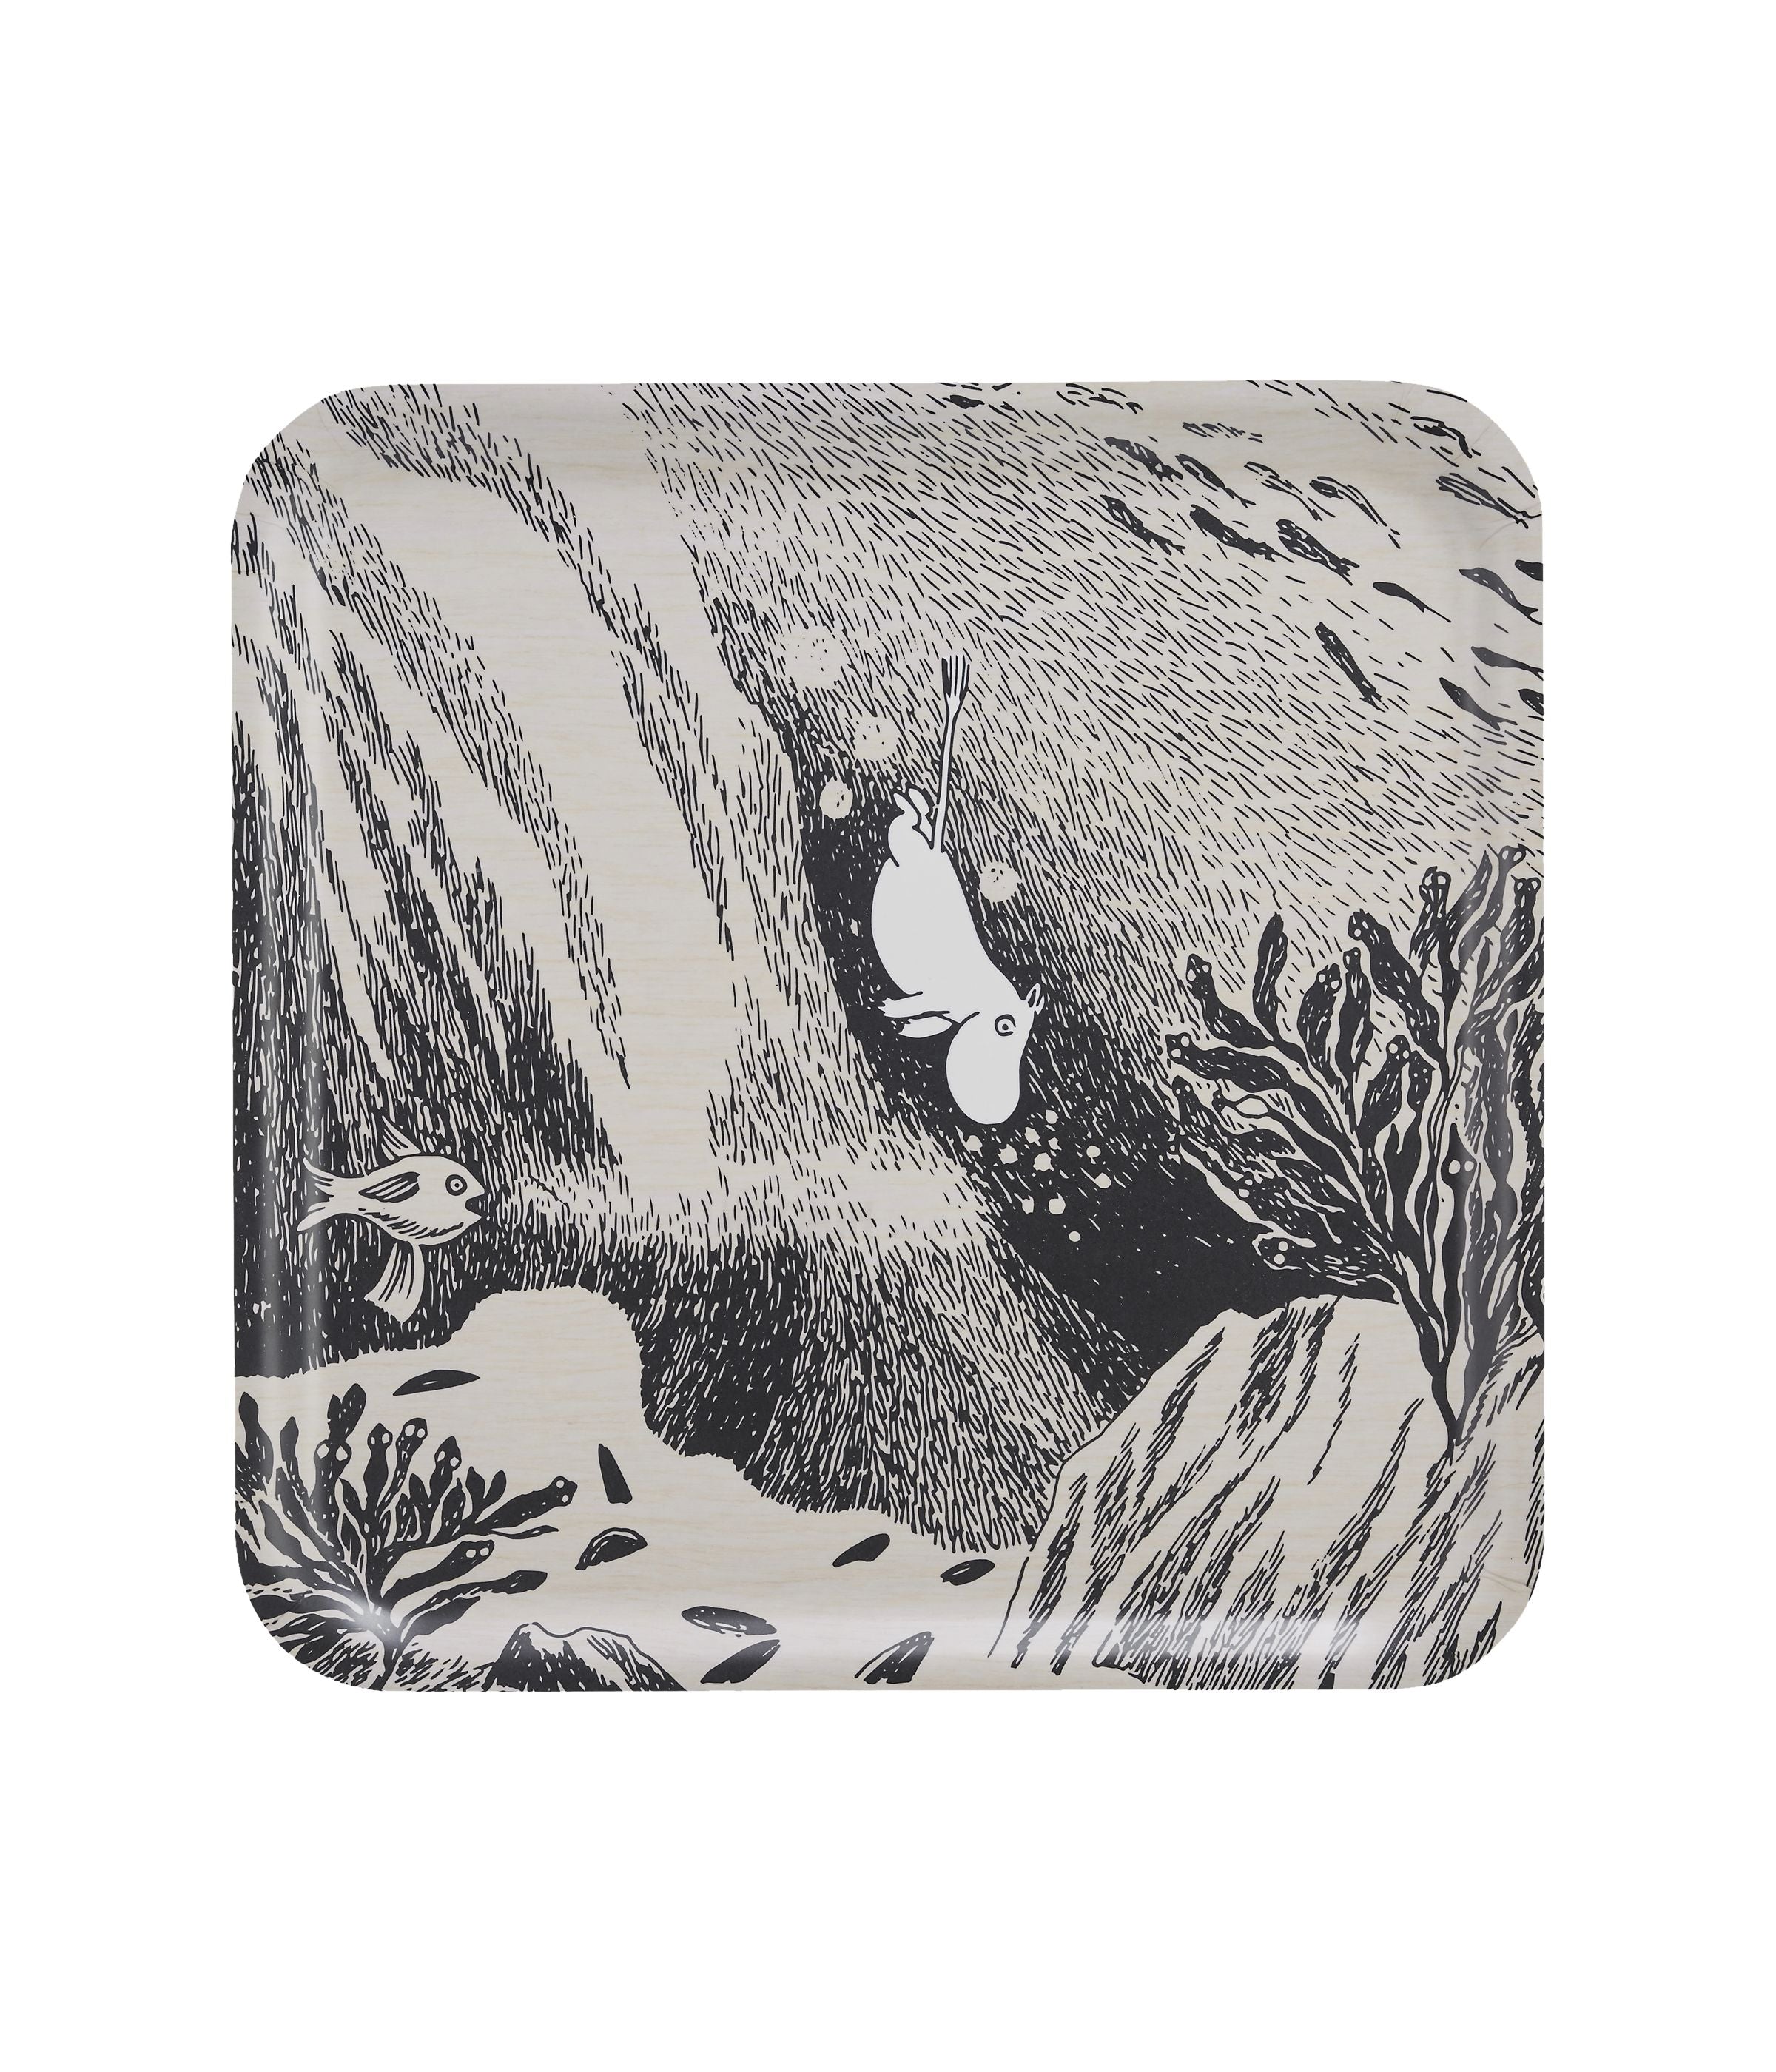 Muurla Moomin Originals Tray, The Dive